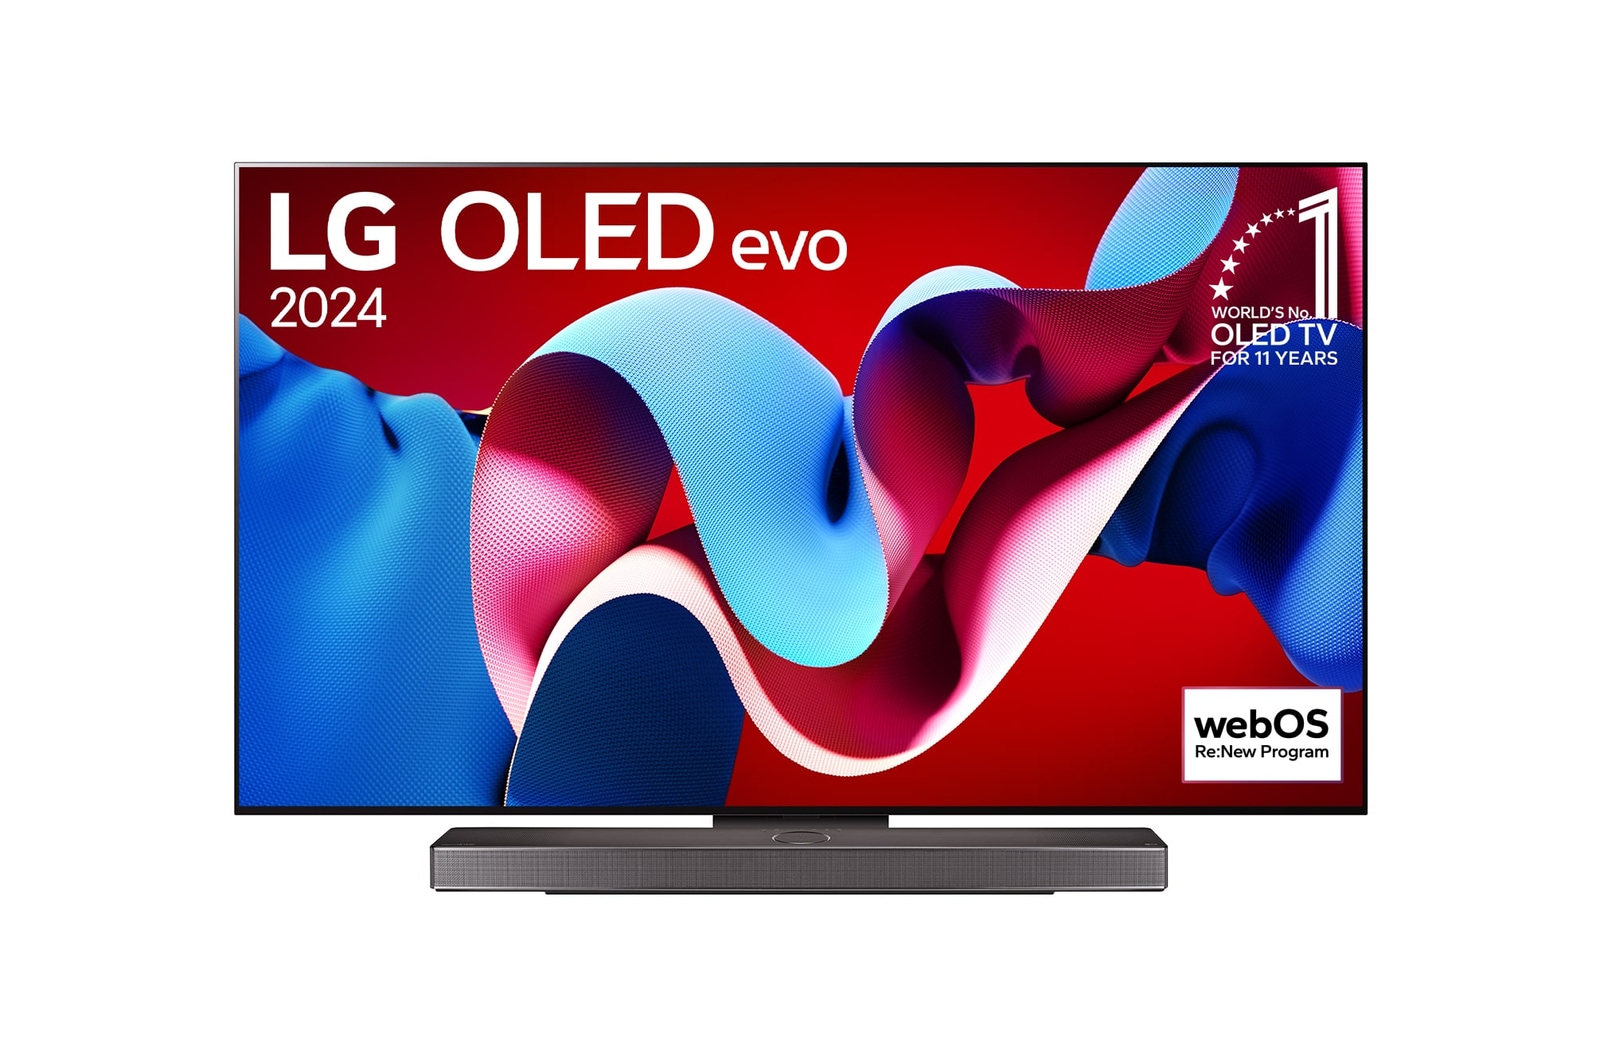 Vista frontal com a LG OLED evo TV, OLED C4, o logótipo do emblema dos 11 anos da OLED número 1 do mundo e o logótipo do webOS Re:New Program no ecrã, assim como a barra de som abaixo